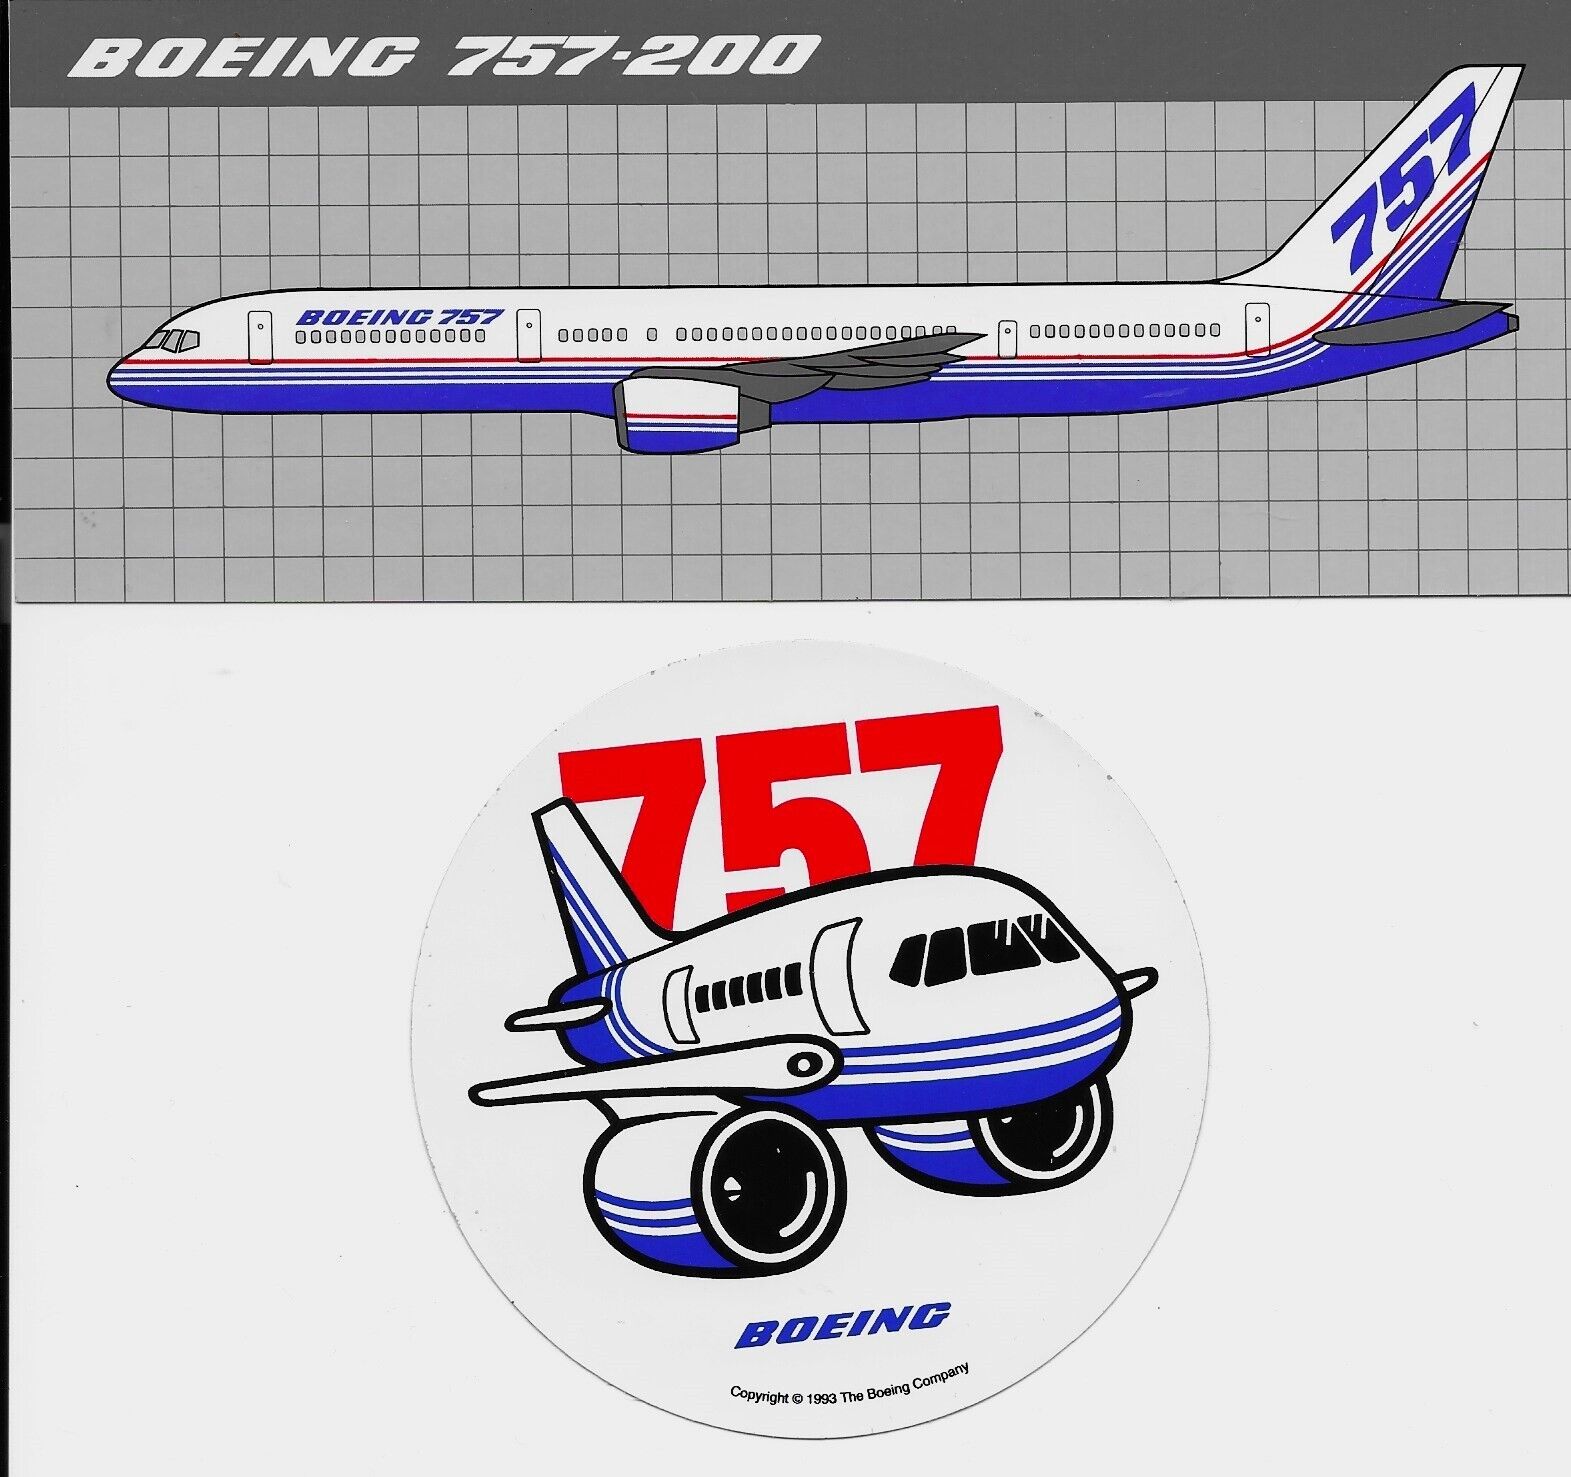 Boeing 757-200, 8in x 3in Sticker & One 757, 4in Round Pudgy  Sticker